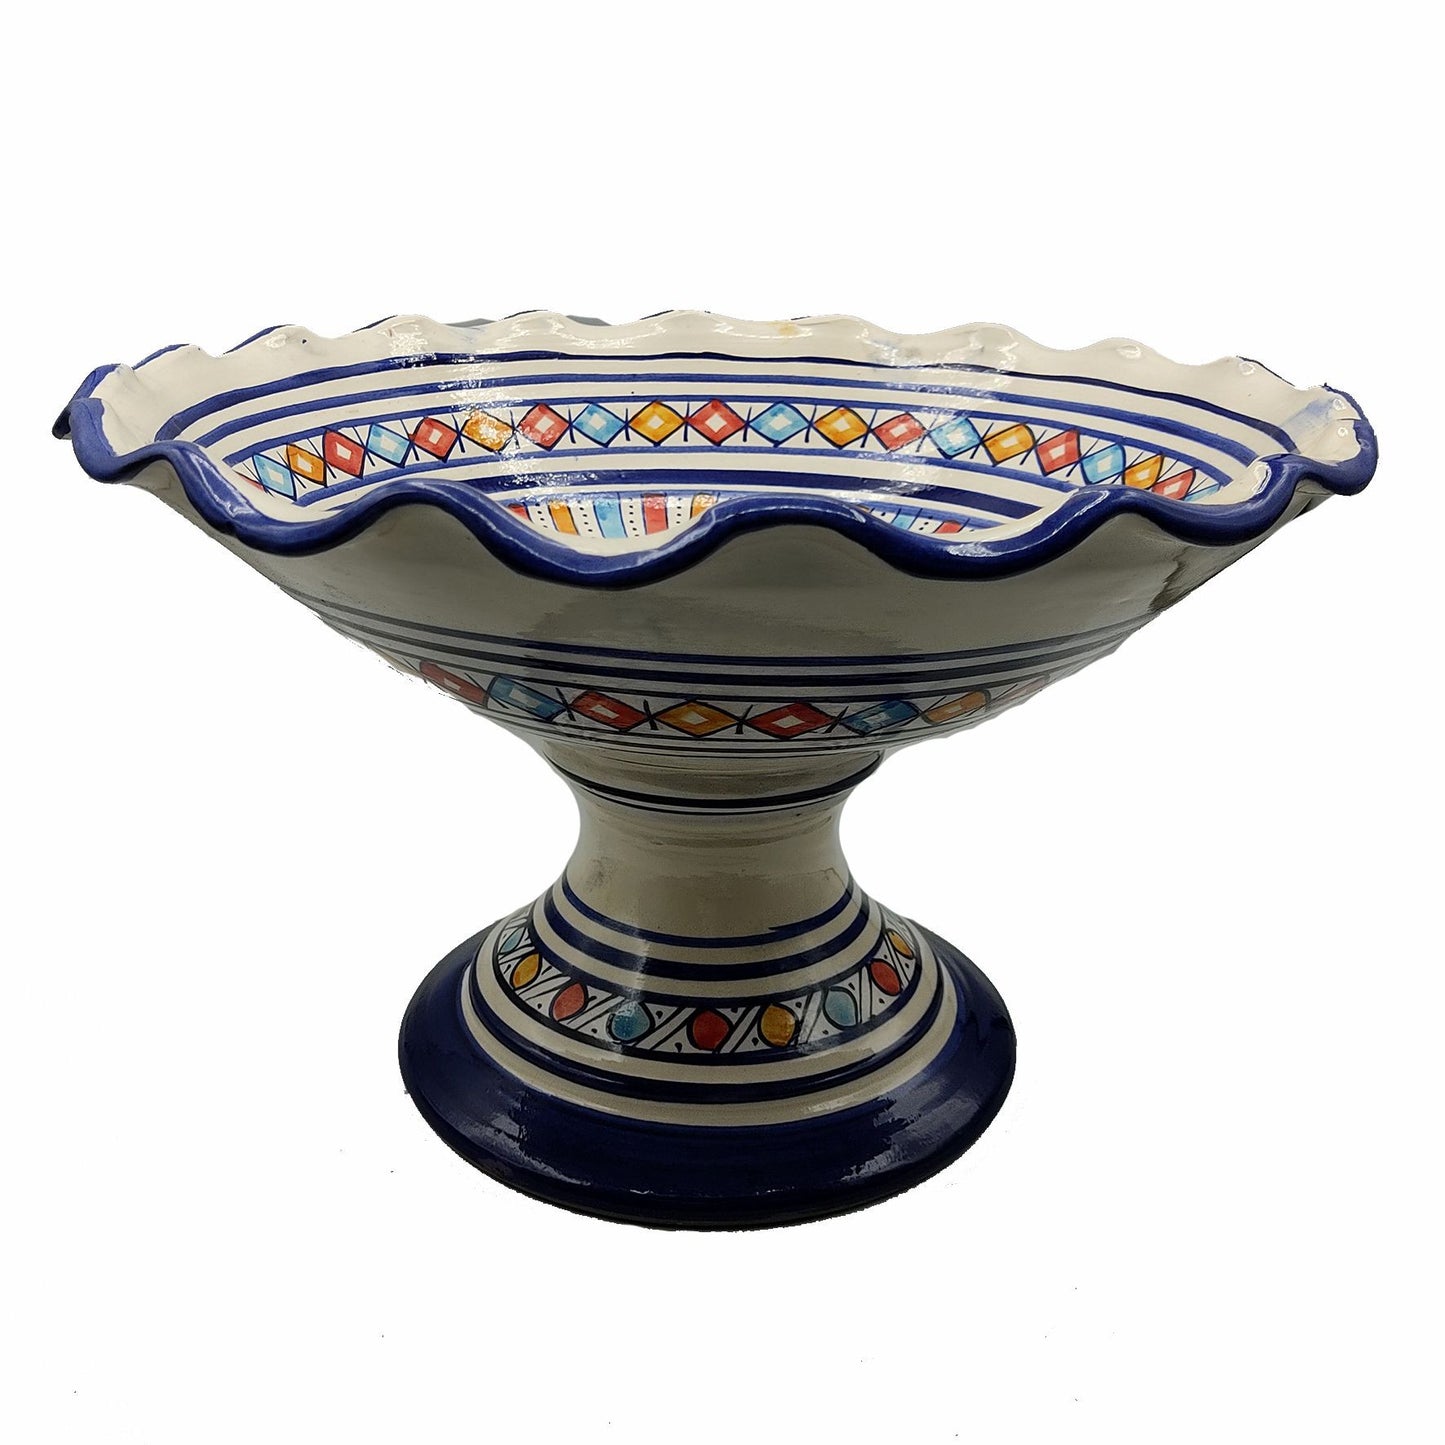 Insalatiera Fruttiera Centrotavola Ceramica Etnica Marocco Marocchino 0605211205